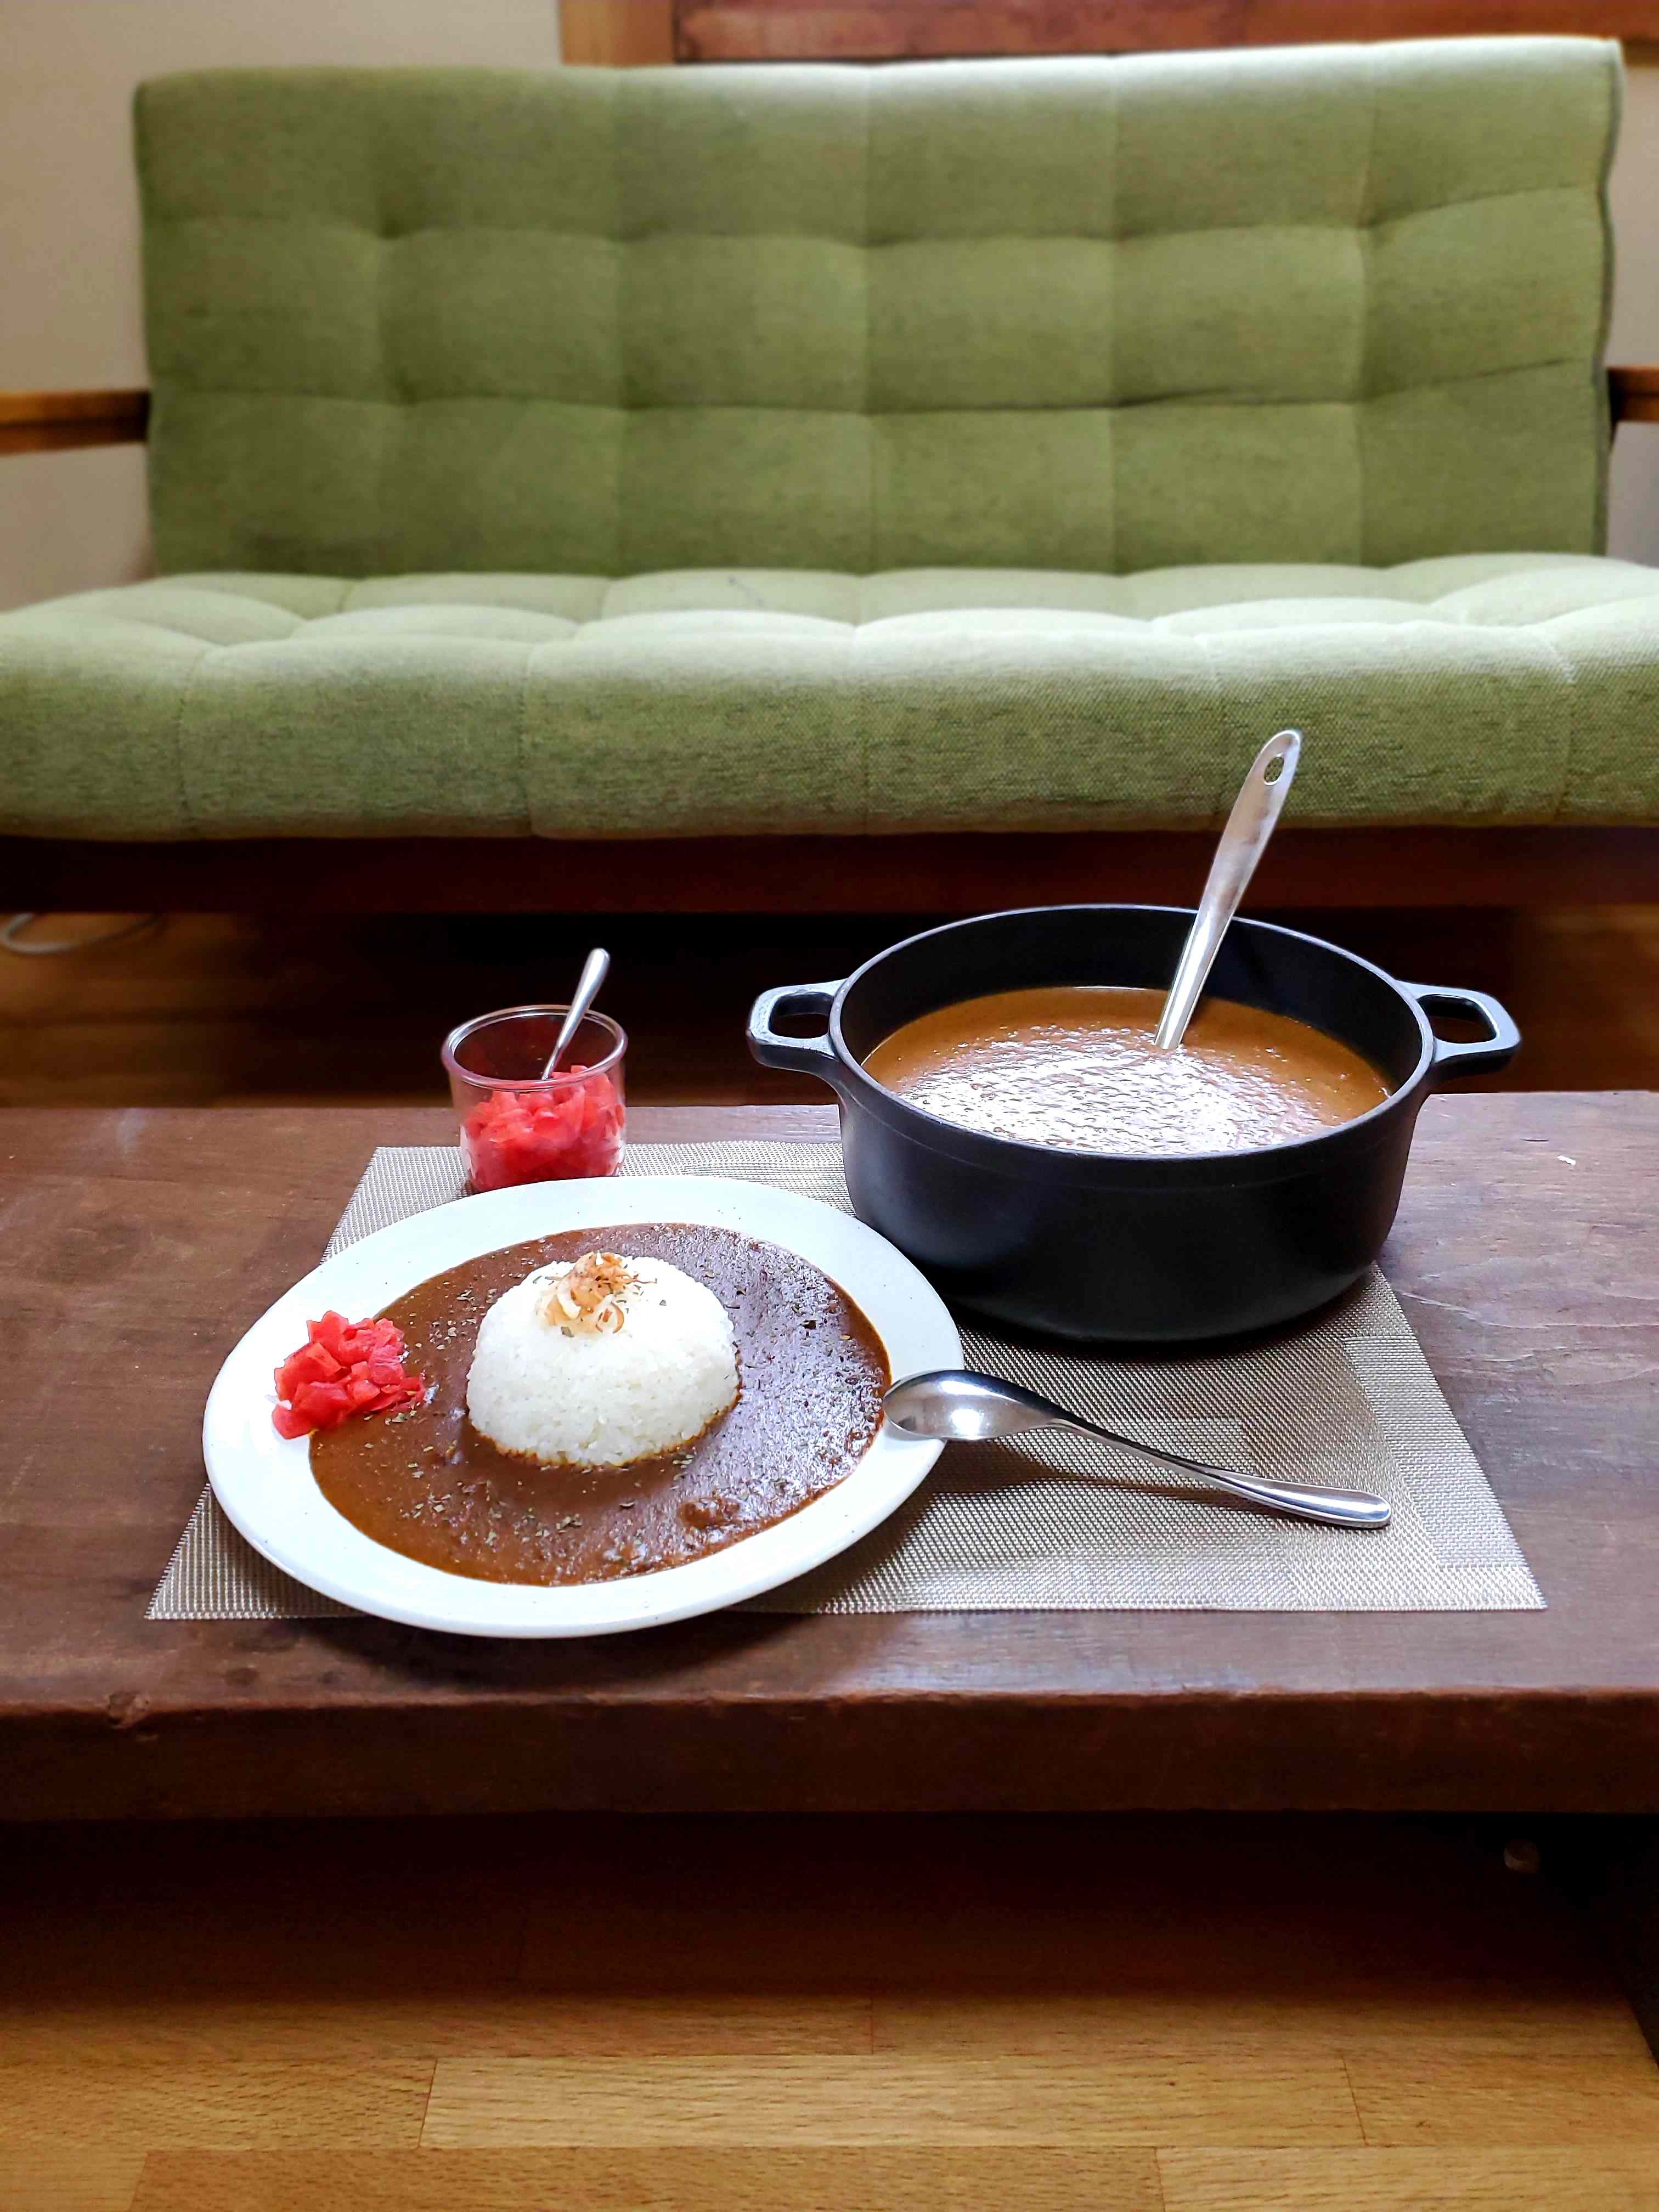 札幌スパイスカレー 黒岩咖哩飯店 Blog Archive 黒岩咖哩飯店のカレーがレトルトパウチにてネット販売開始